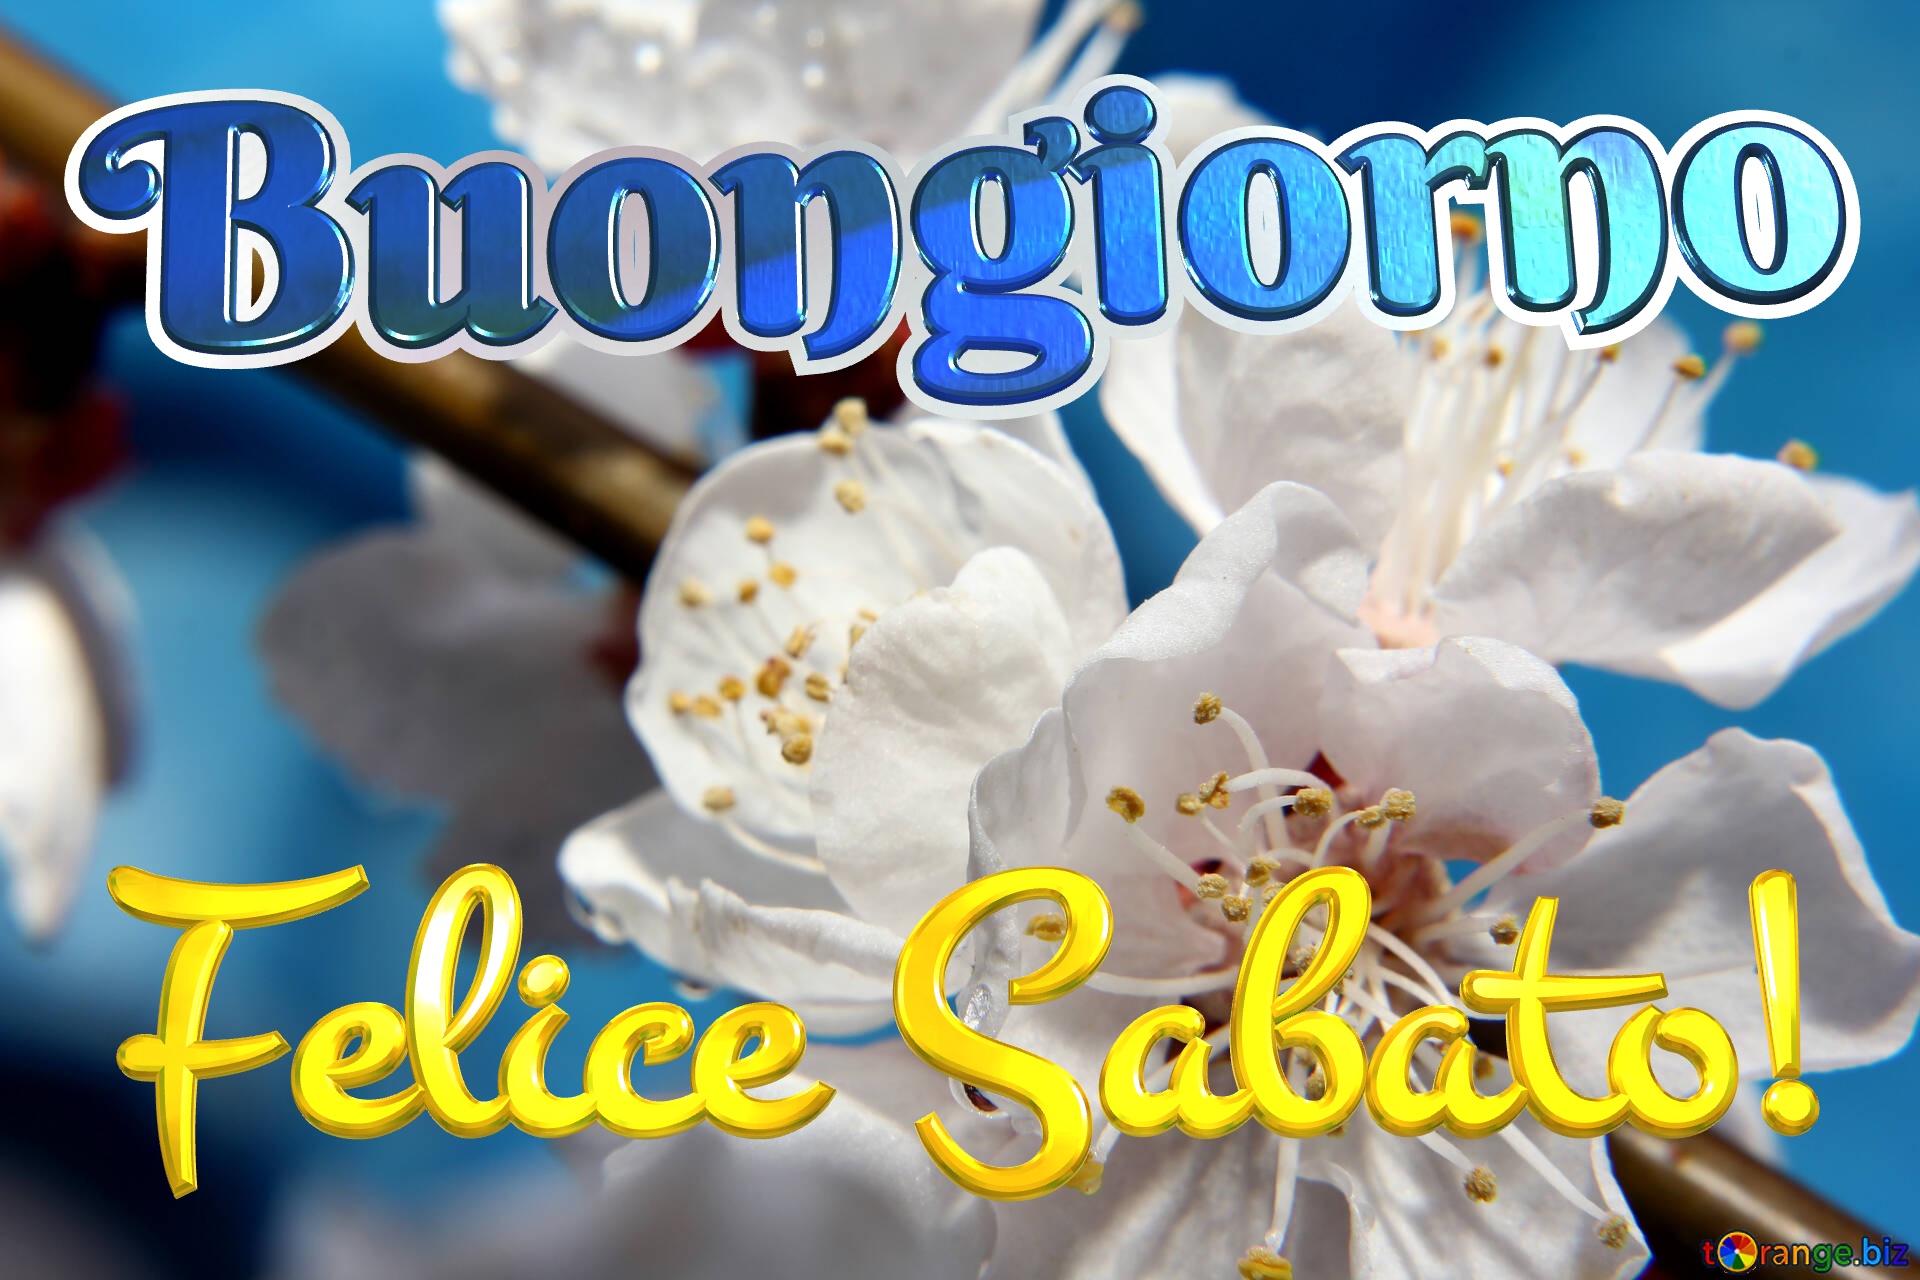 BUONGIORNO FORUM!!!!  Saluti lampo - Pagina 13 Felice-sabato-buongiorno-flowers-apricot-tree-8242